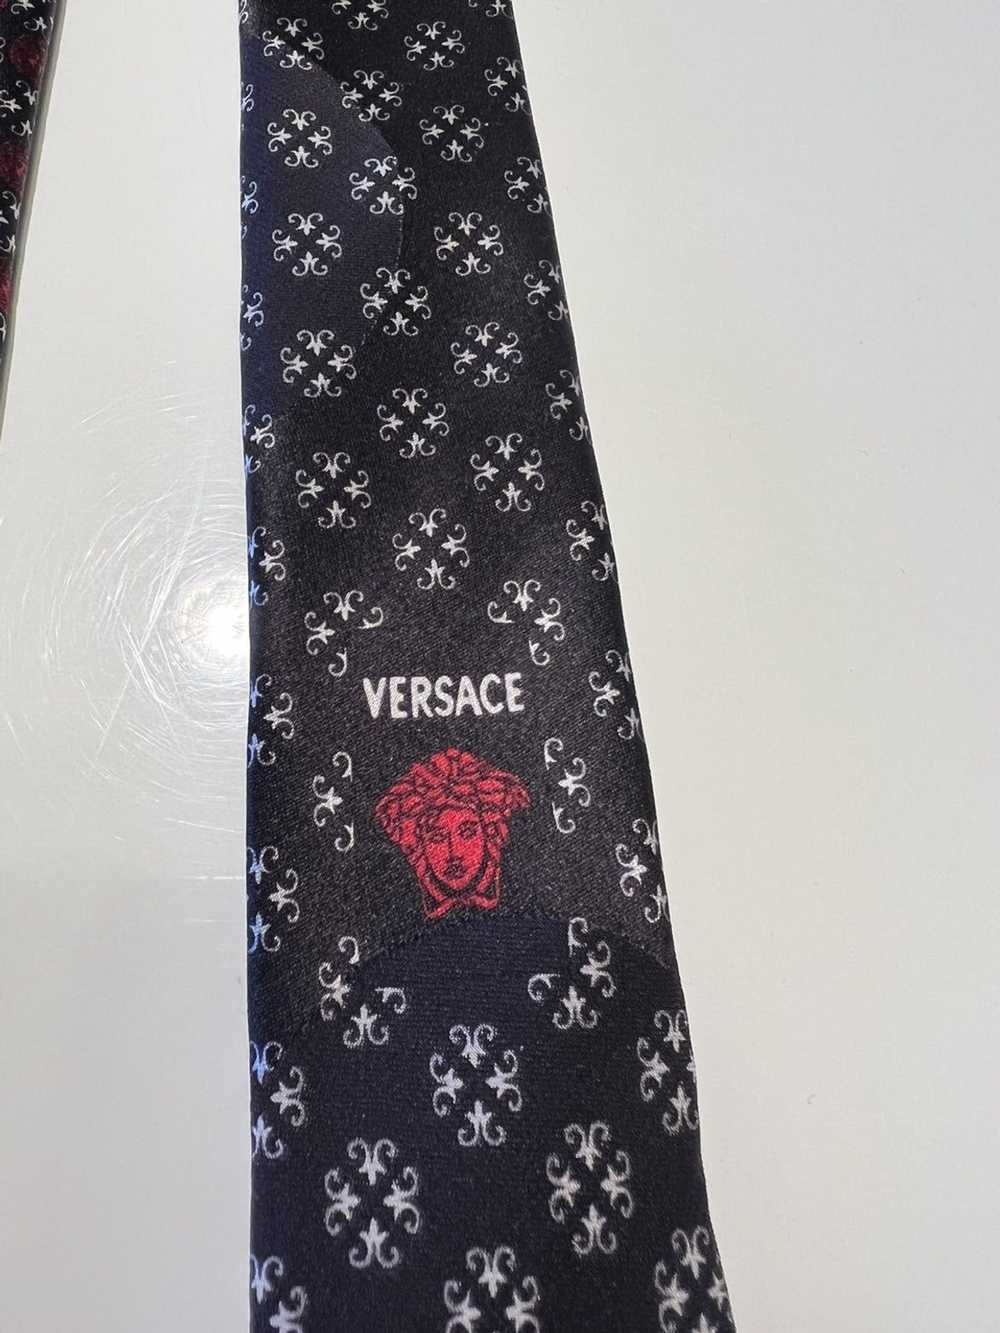 Versace Versace Men's Silk Tie Made In Italy - image 9